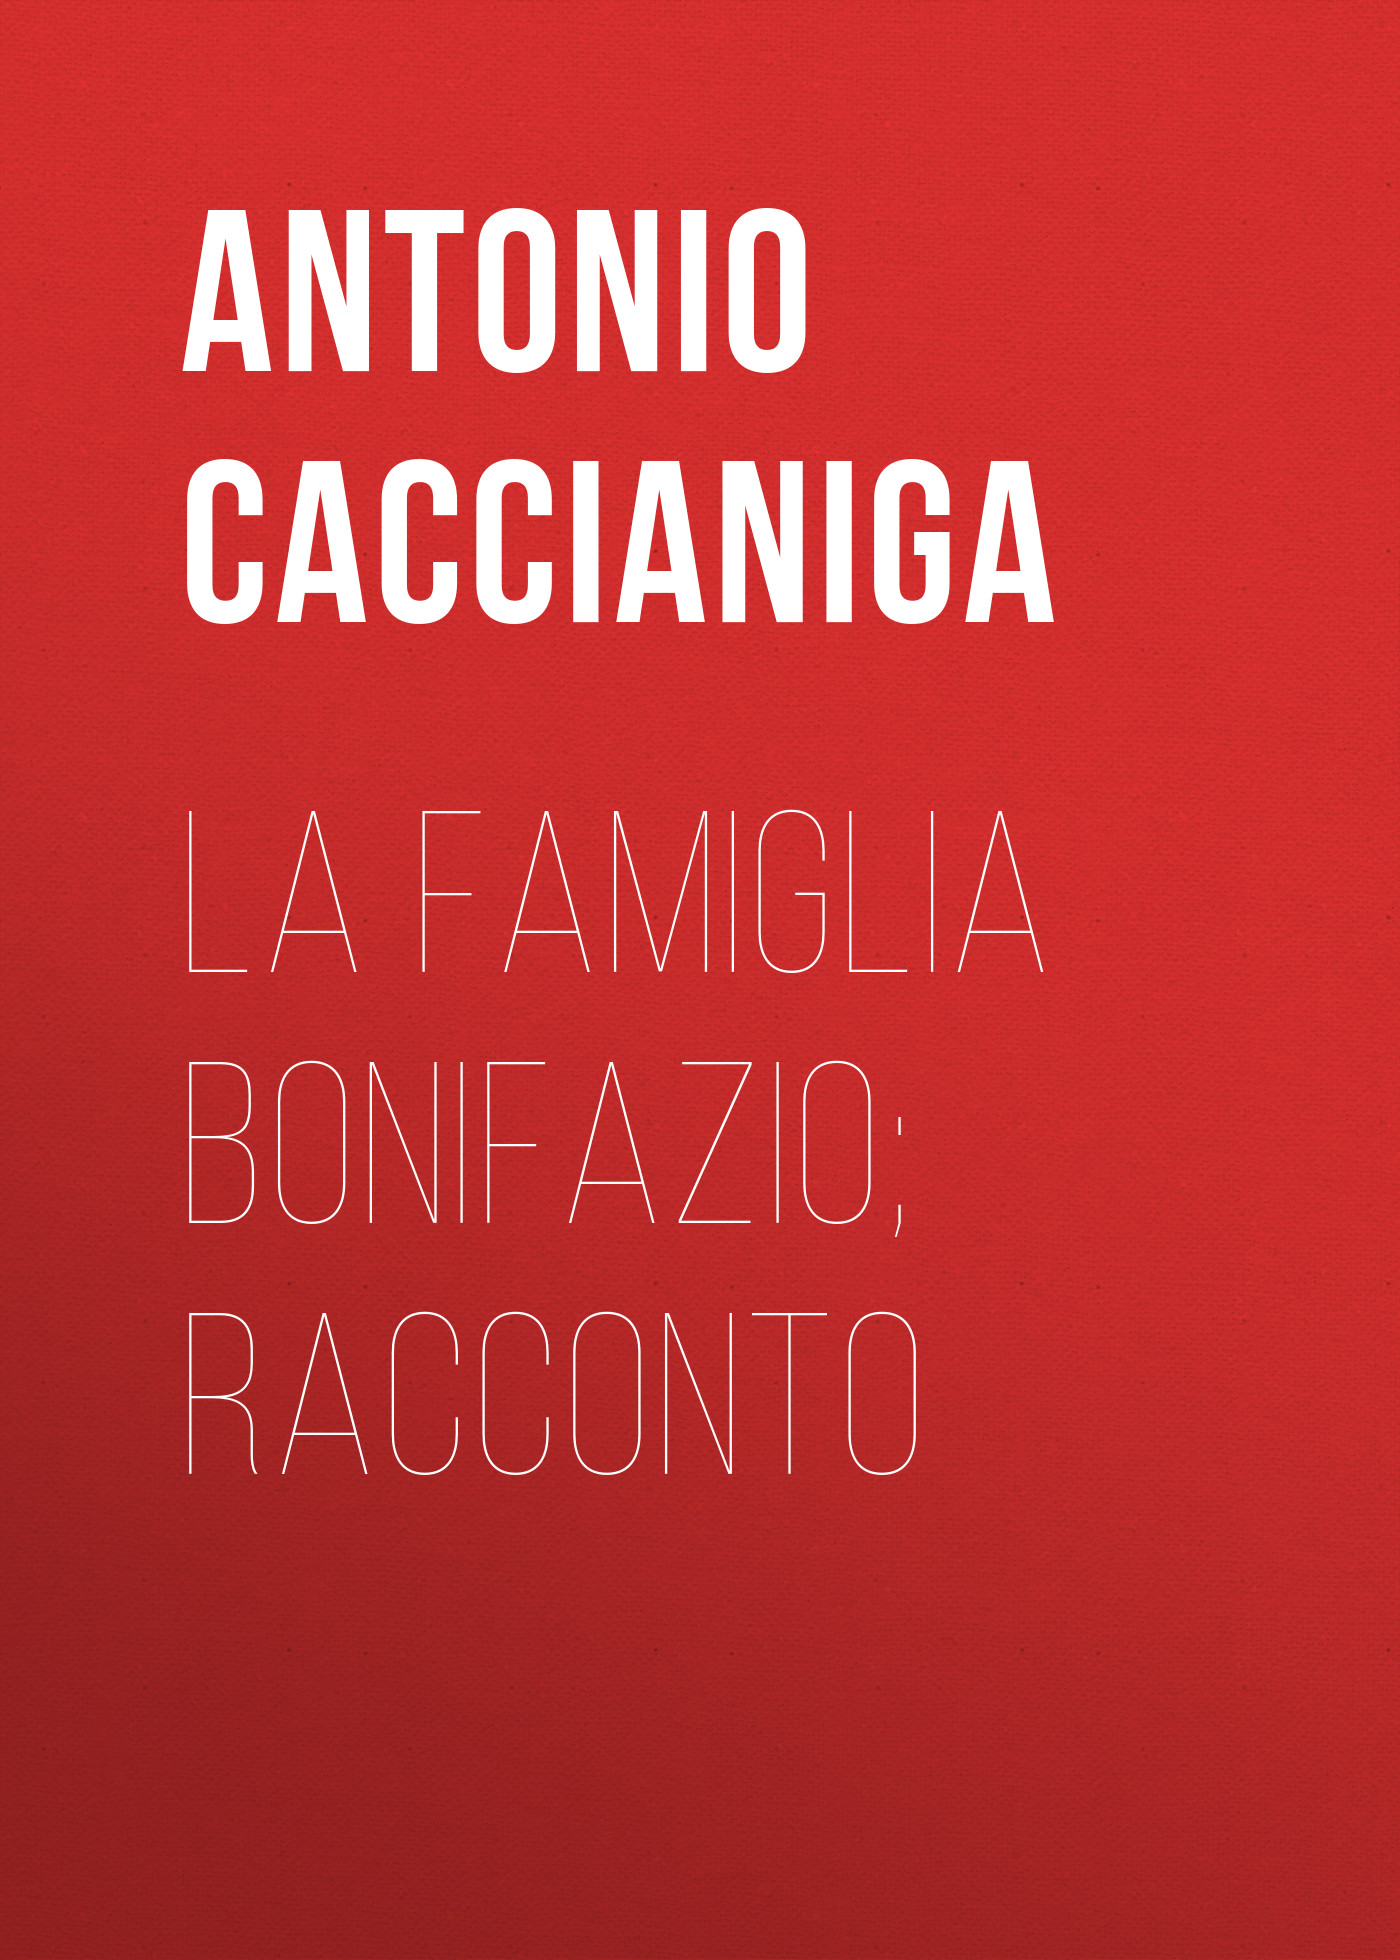 Книга La famiglia Bonifazio; racconto из серии , созданная Antonio Caccianiga, может относится к жанру Зарубежная старинная литература, Зарубежная классика. Стоимость электронной книги La famiglia Bonifazio; racconto с идентификатором 24180980 составляет 0.90 руб.